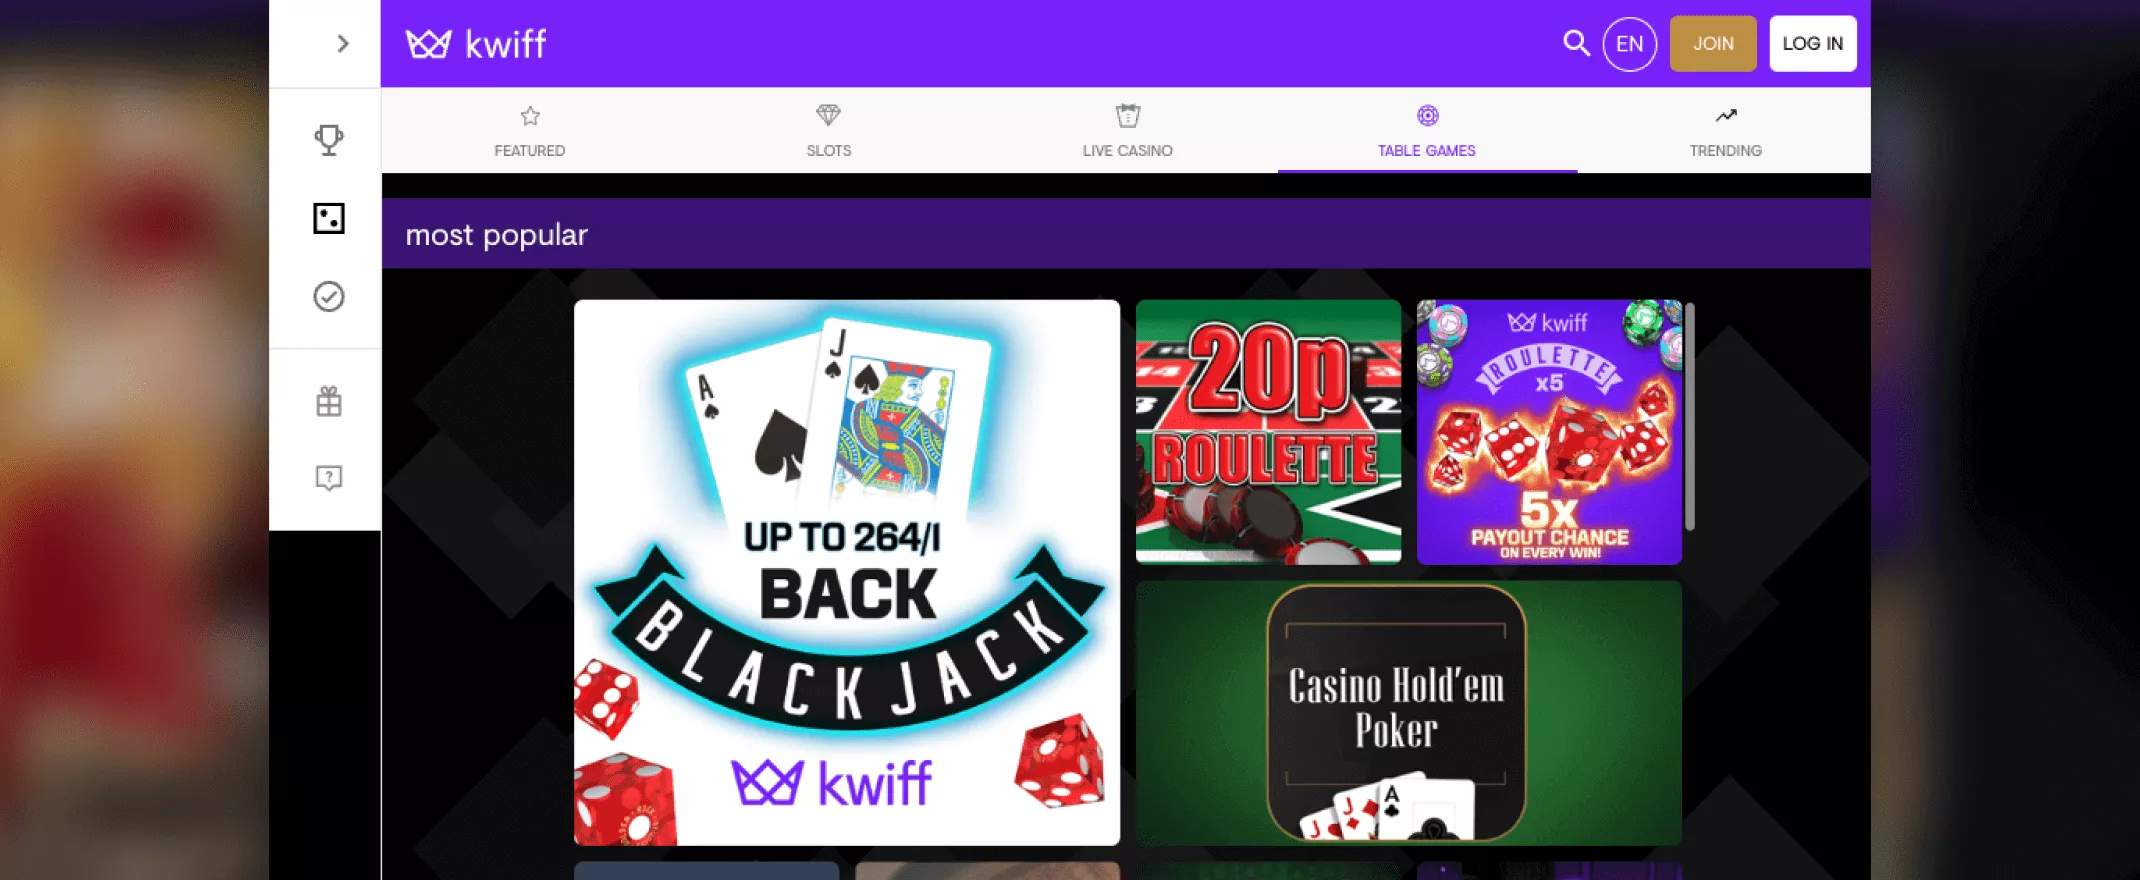 Kwiff casino games screenshot